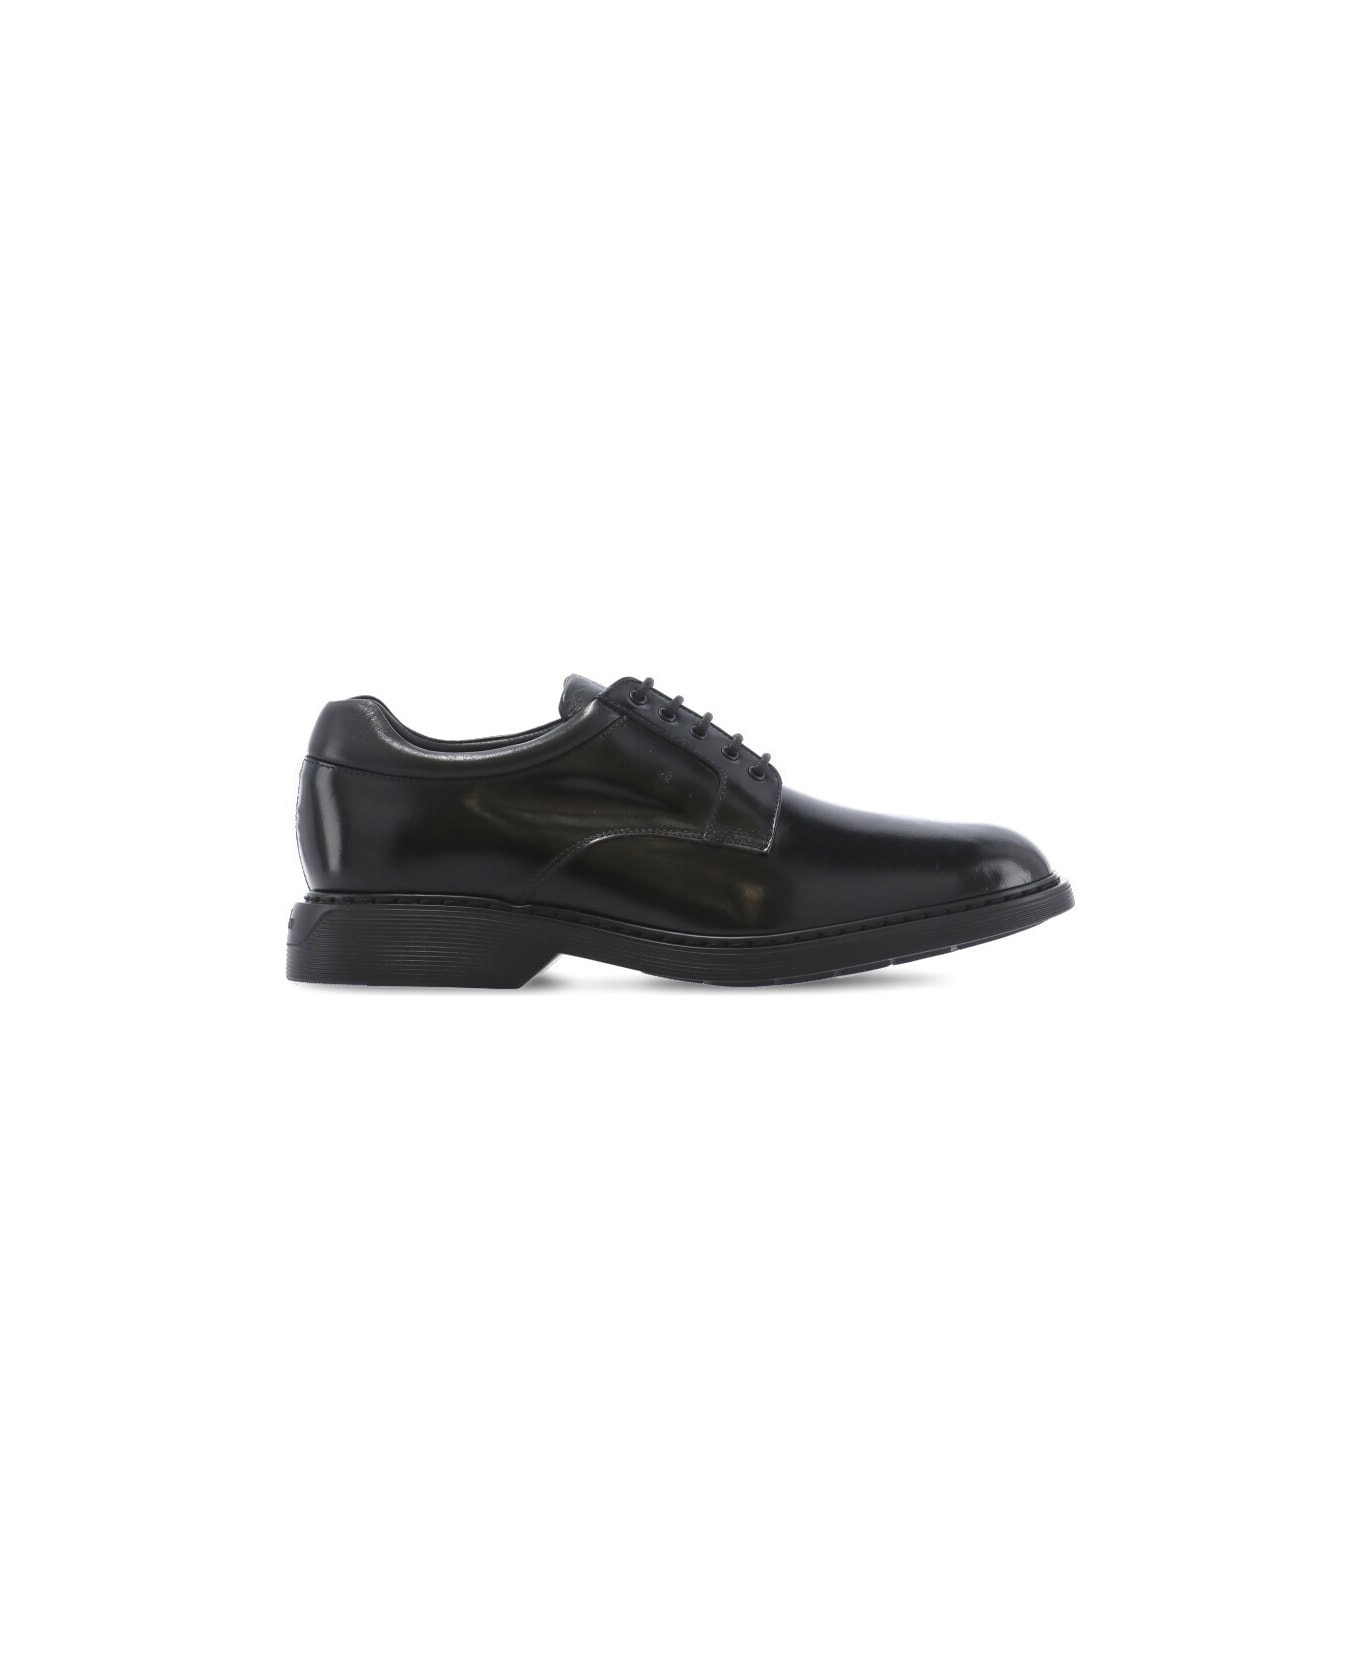 Hogan H576 Lace-up Shoes - Black